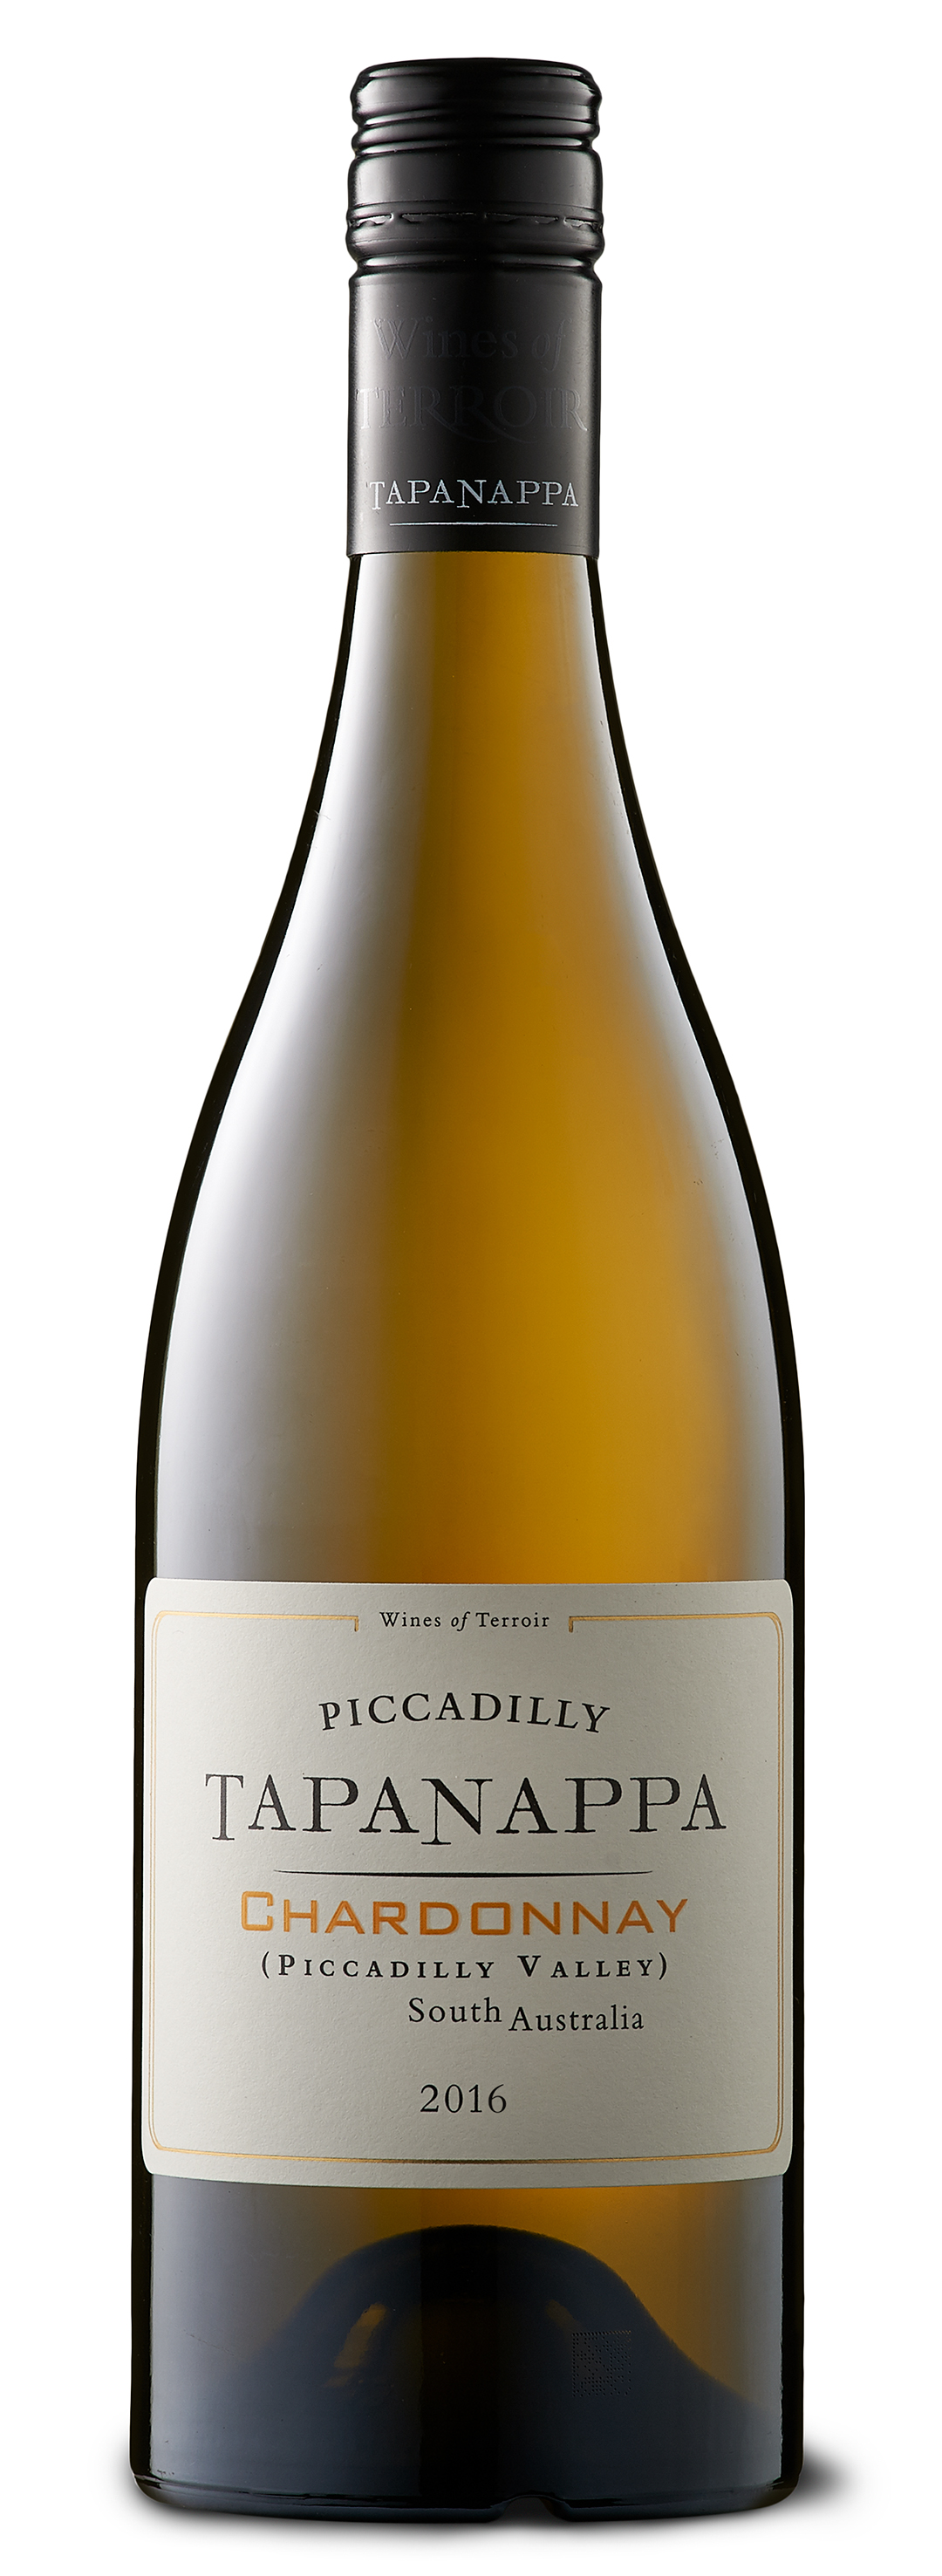 Tapanappa Piccadilly Valley 2016 Chardonnay bottleshot